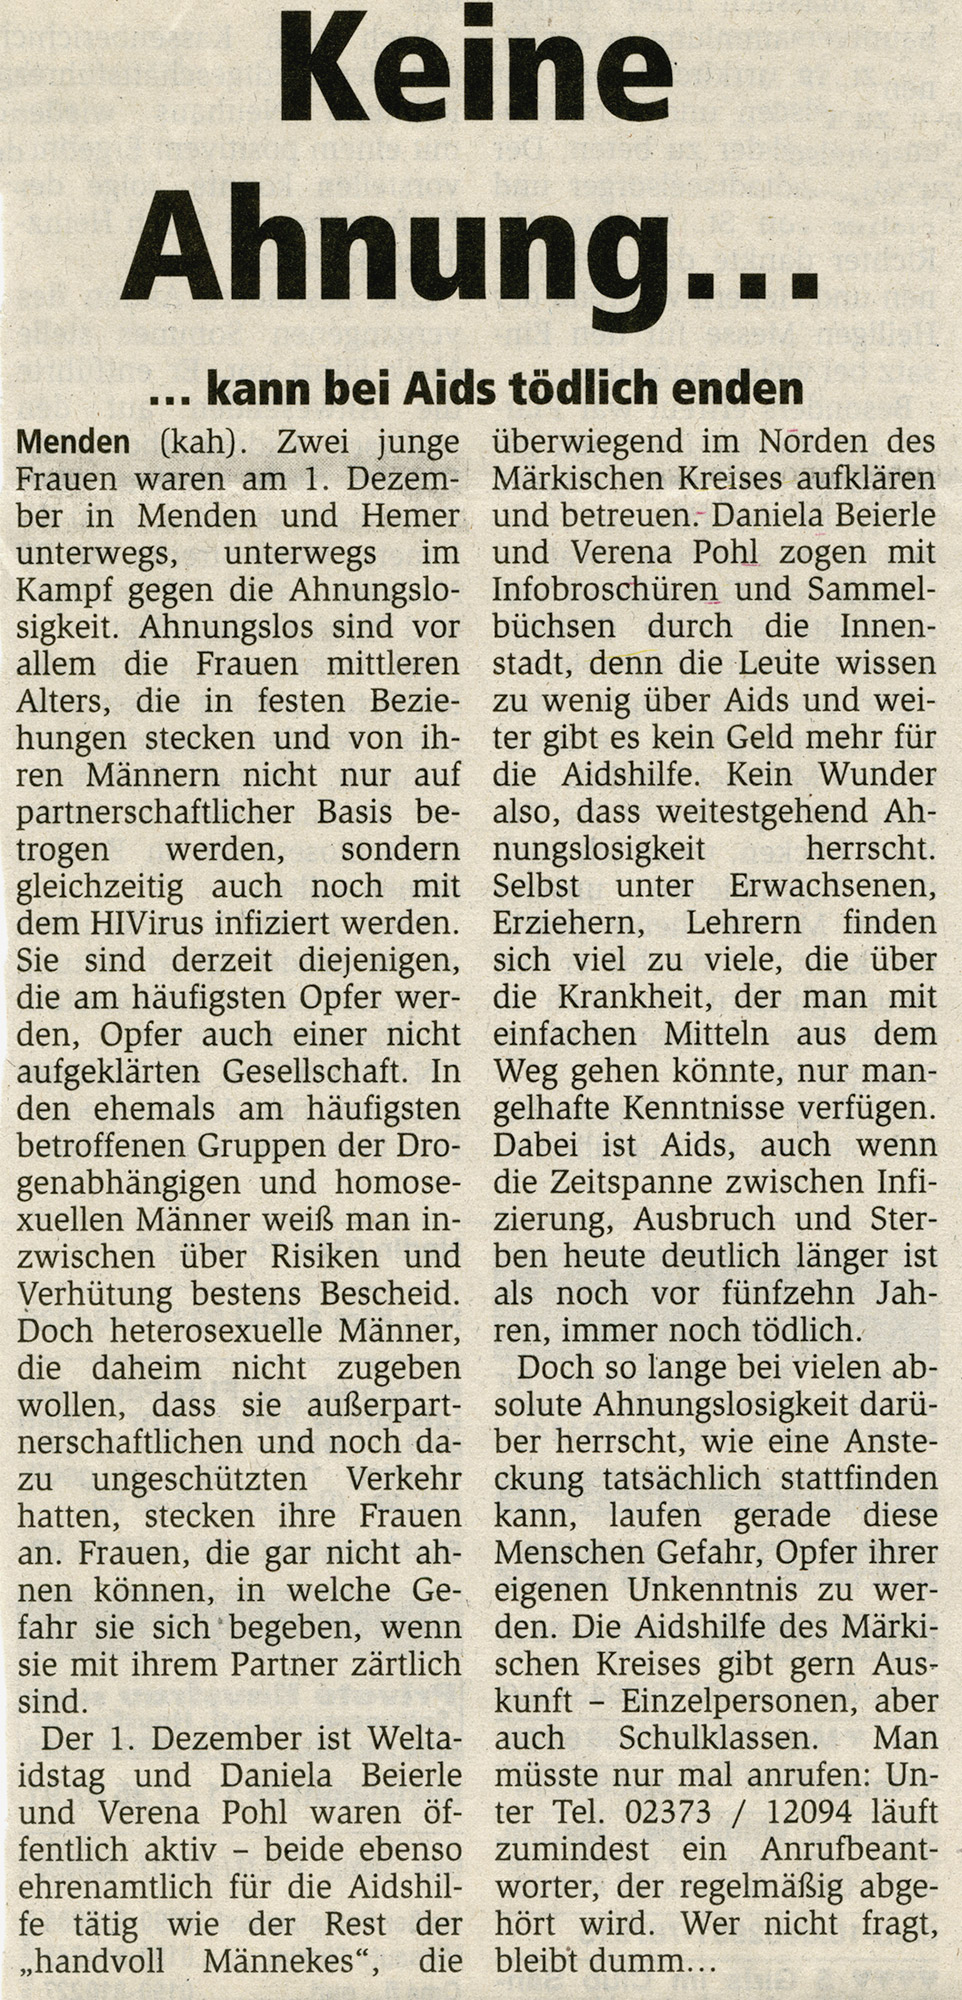 Artikel im Stadtanzeiger Menden vom 05.12.2004